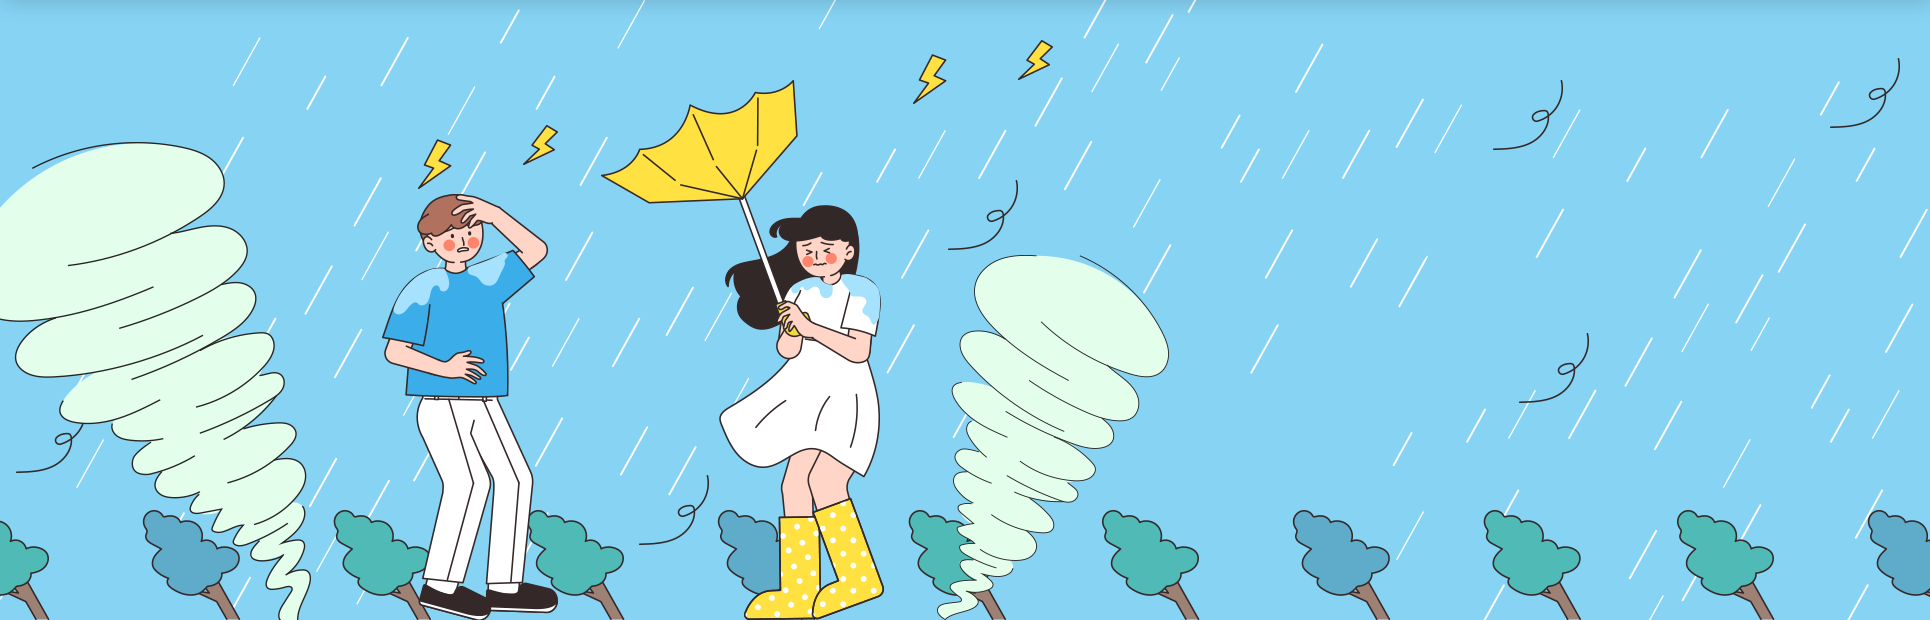 하늘색 배경에 한 남성과 노란 우산을 들고 있는 여성이 그려져 있다. 비바람과 천둥을 동반한 태풍이 몰아쳐 주위 나무들은 모두 기울어져 있고 여성이 들고 있는 우산도 뒤집혀 있다. 